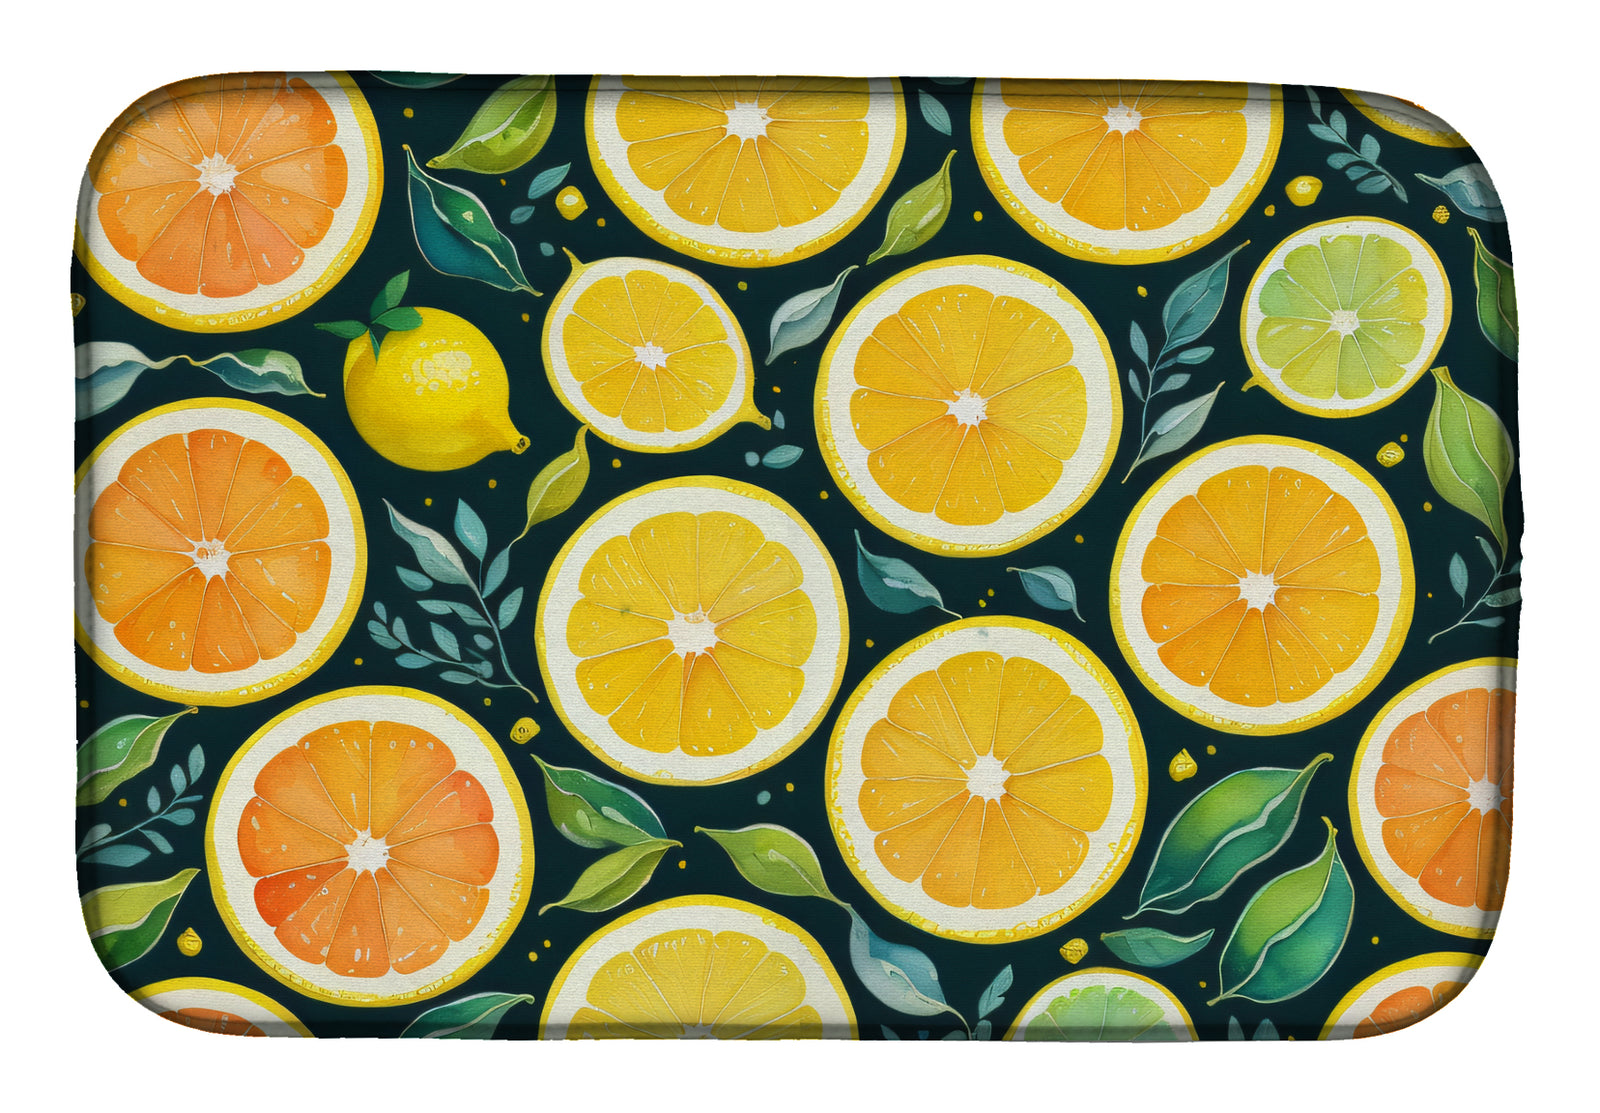 Buy this Colorful Lemons Dish Drying Mat